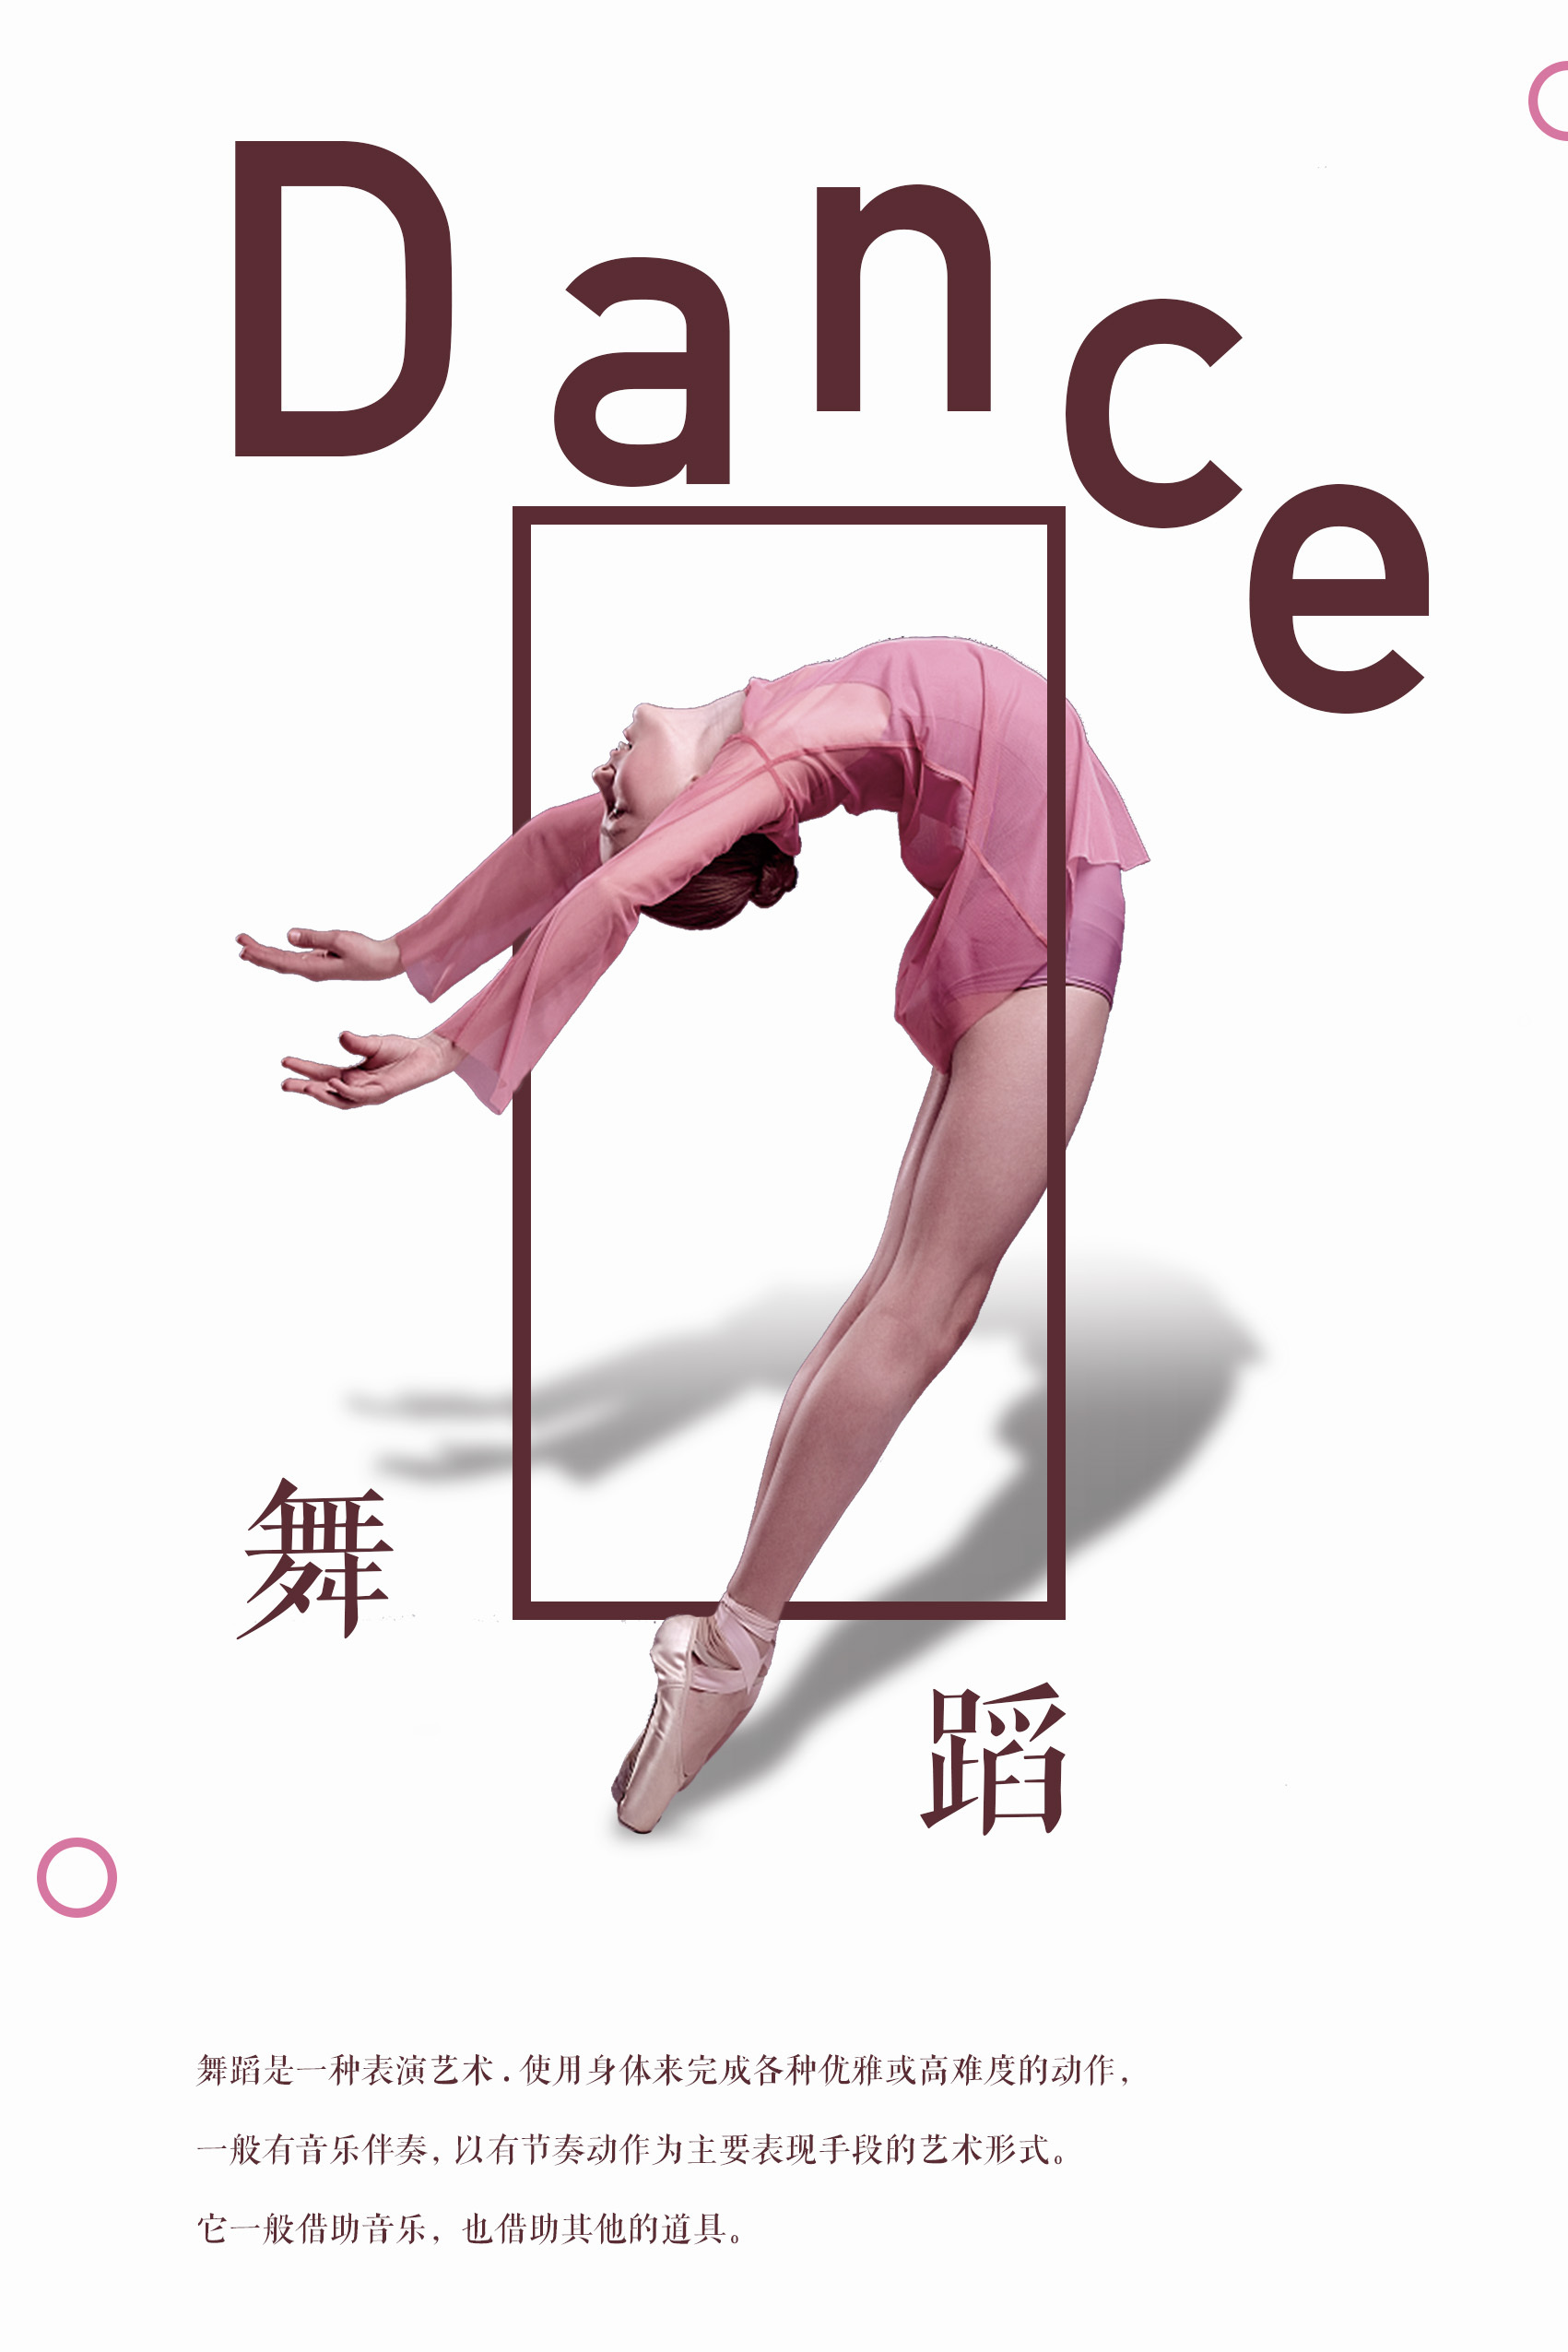 跳舞舞蹈图片素材免费下载 - 觅知网